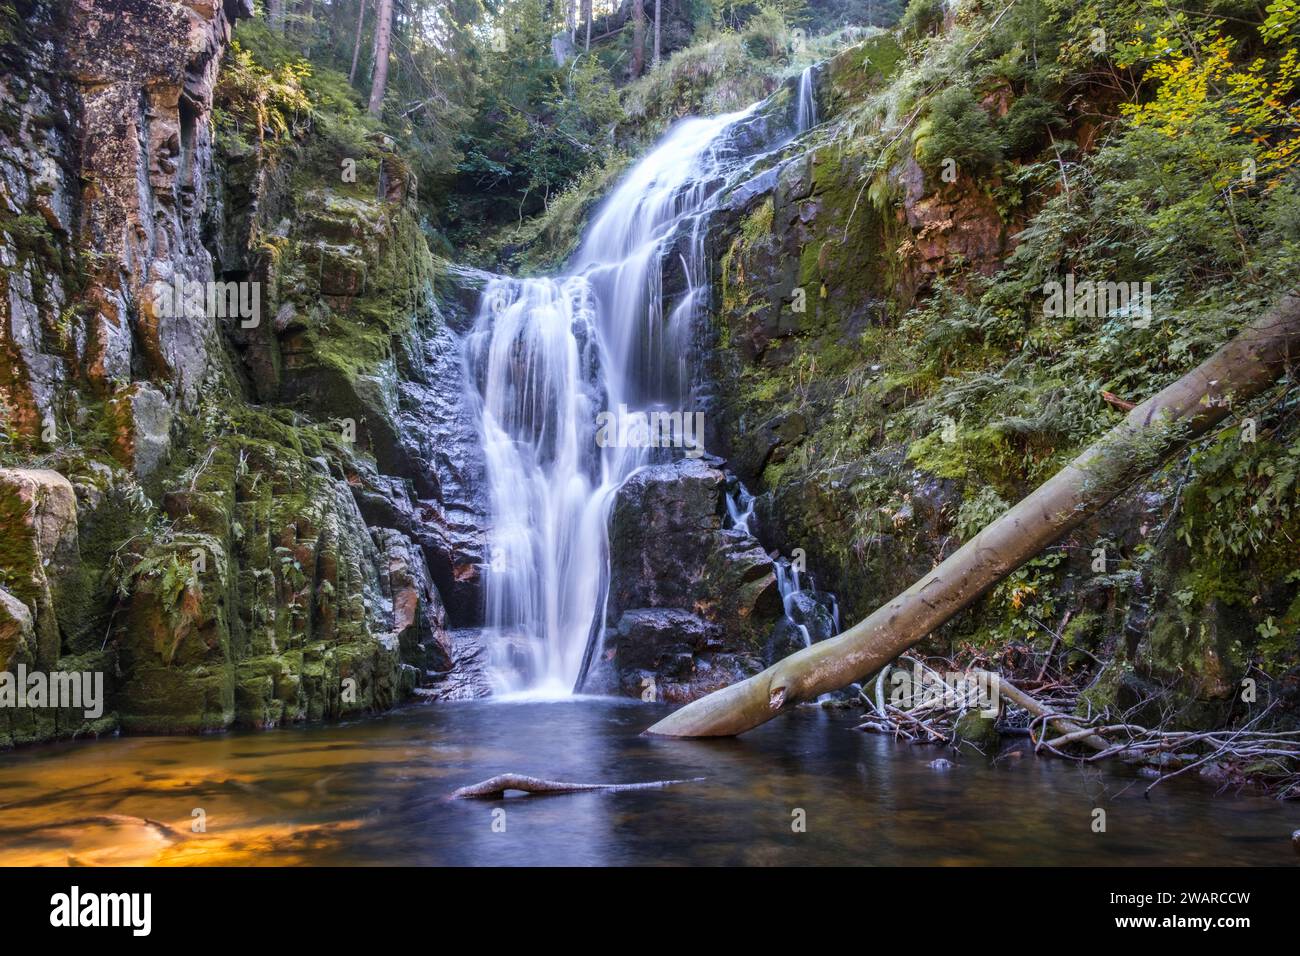 Una bellissima cascata chiamata: Kamienczyk girato da vicino, con un tronco nell'acqua. Girato sulle montagne di una città chiamata szklarska poreba in Polonia Foto Stock